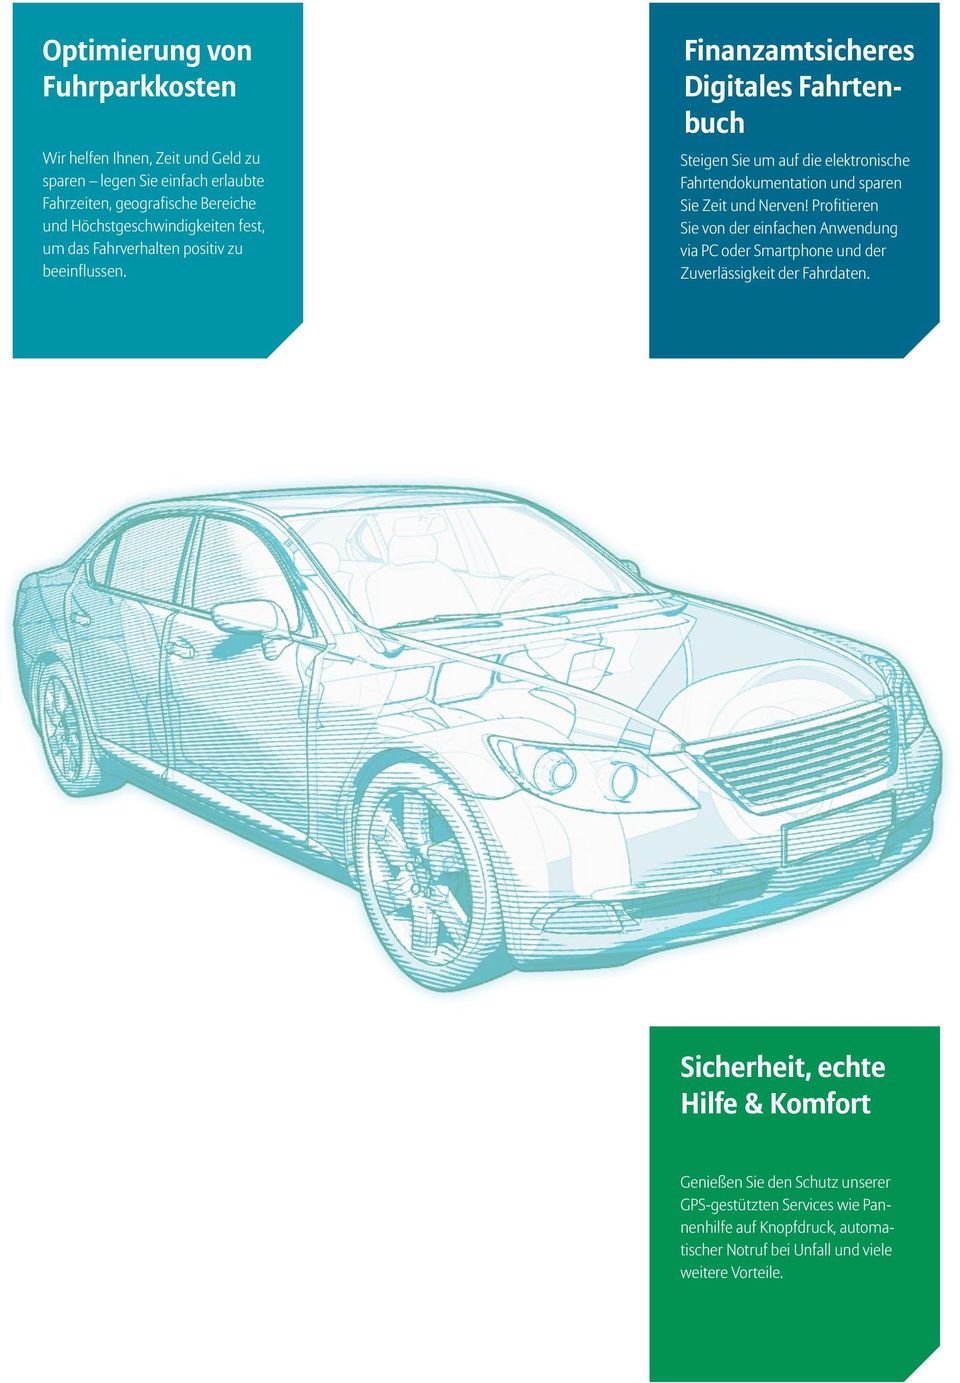 Finanzamtsicheres Digitales Fahrtenbuch Steigen Sie um auf die elektronische Fahrtendokumentation und sparen Sie Zeit und Nerven!